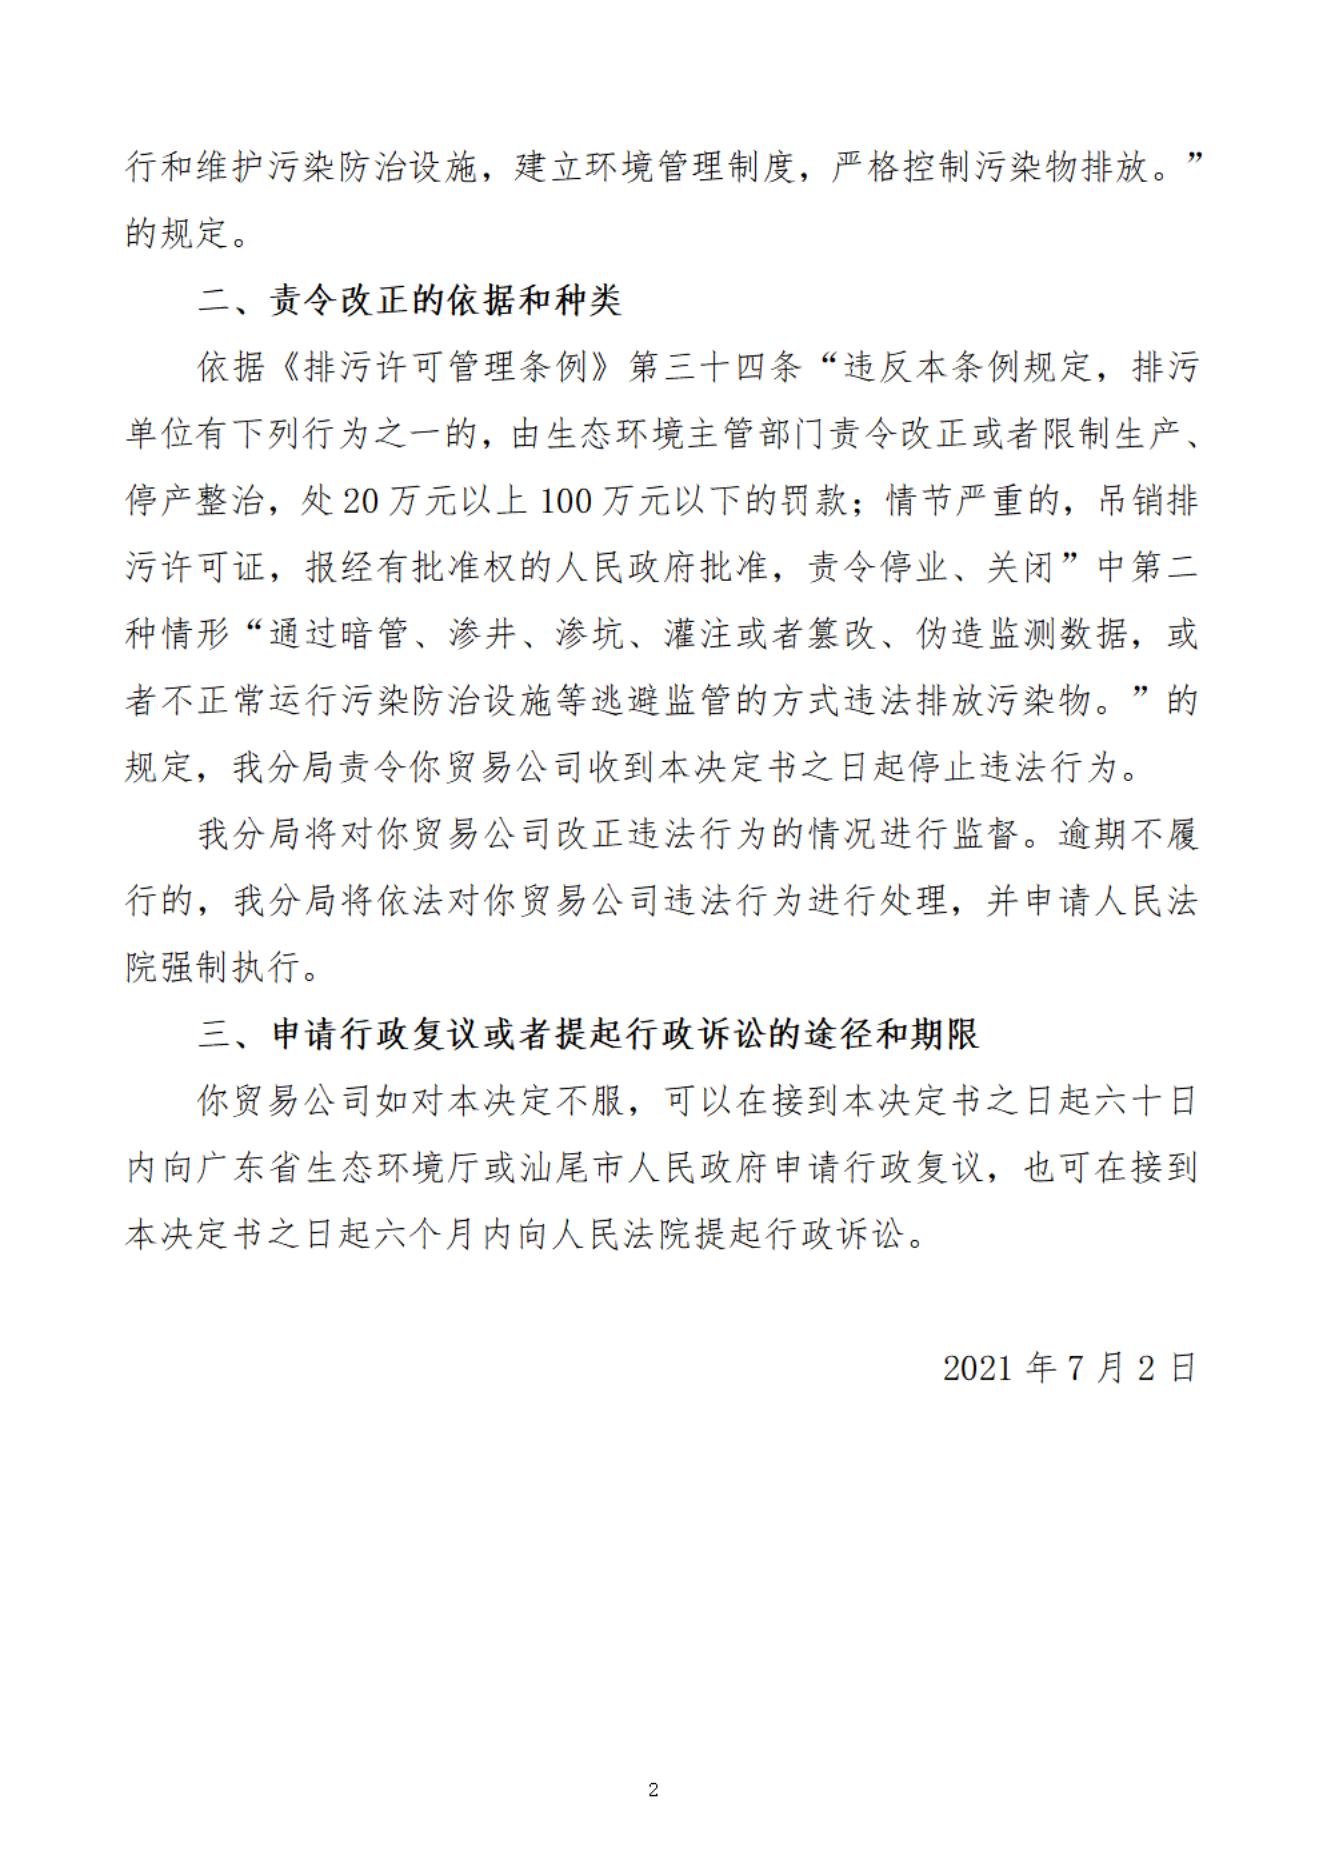 海丰县食品企业集团贸易公司决定书_20220106094211_01.jpg